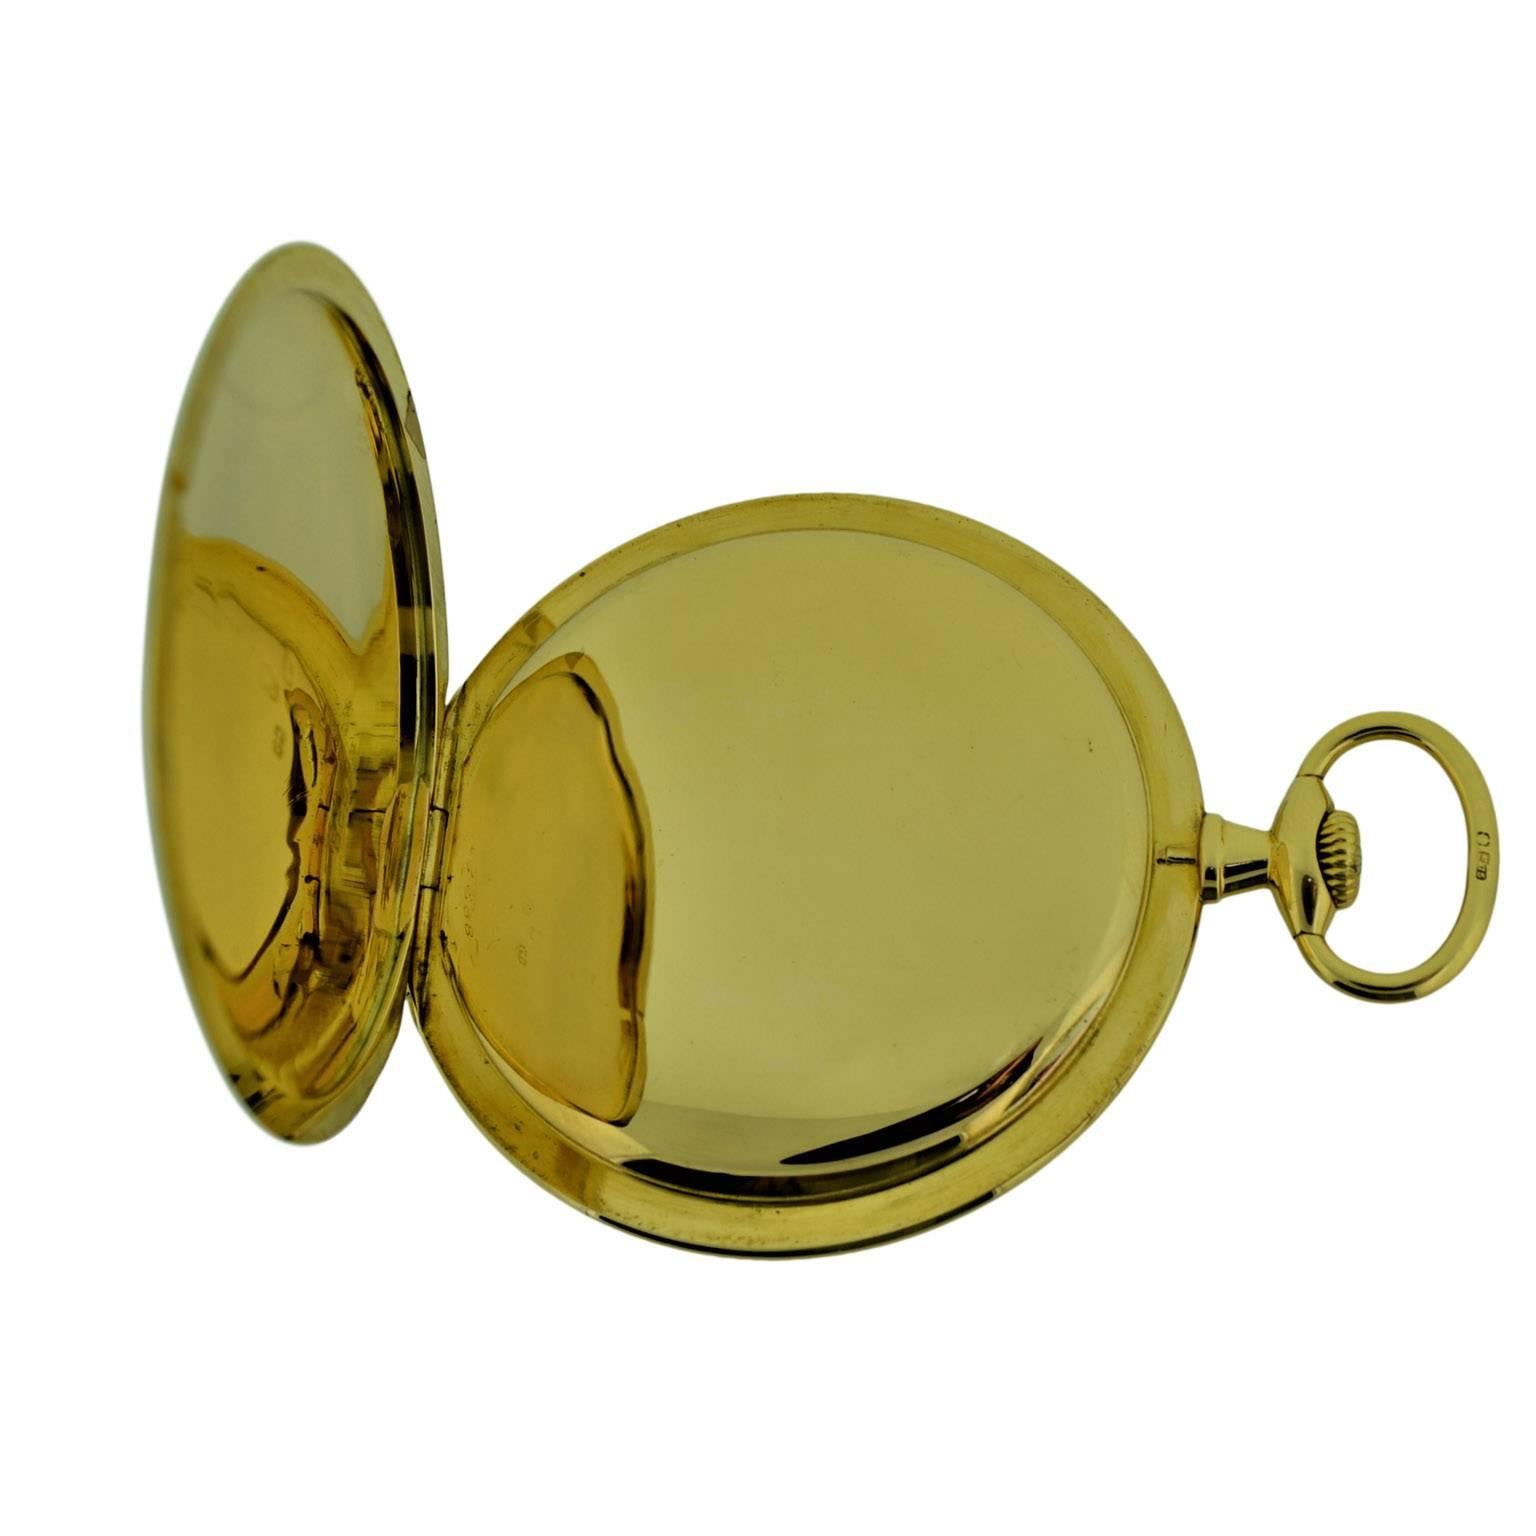 J.W. Benson 18 Karat Gold Open Face Pocket Watch by LeCoultre, circa ...